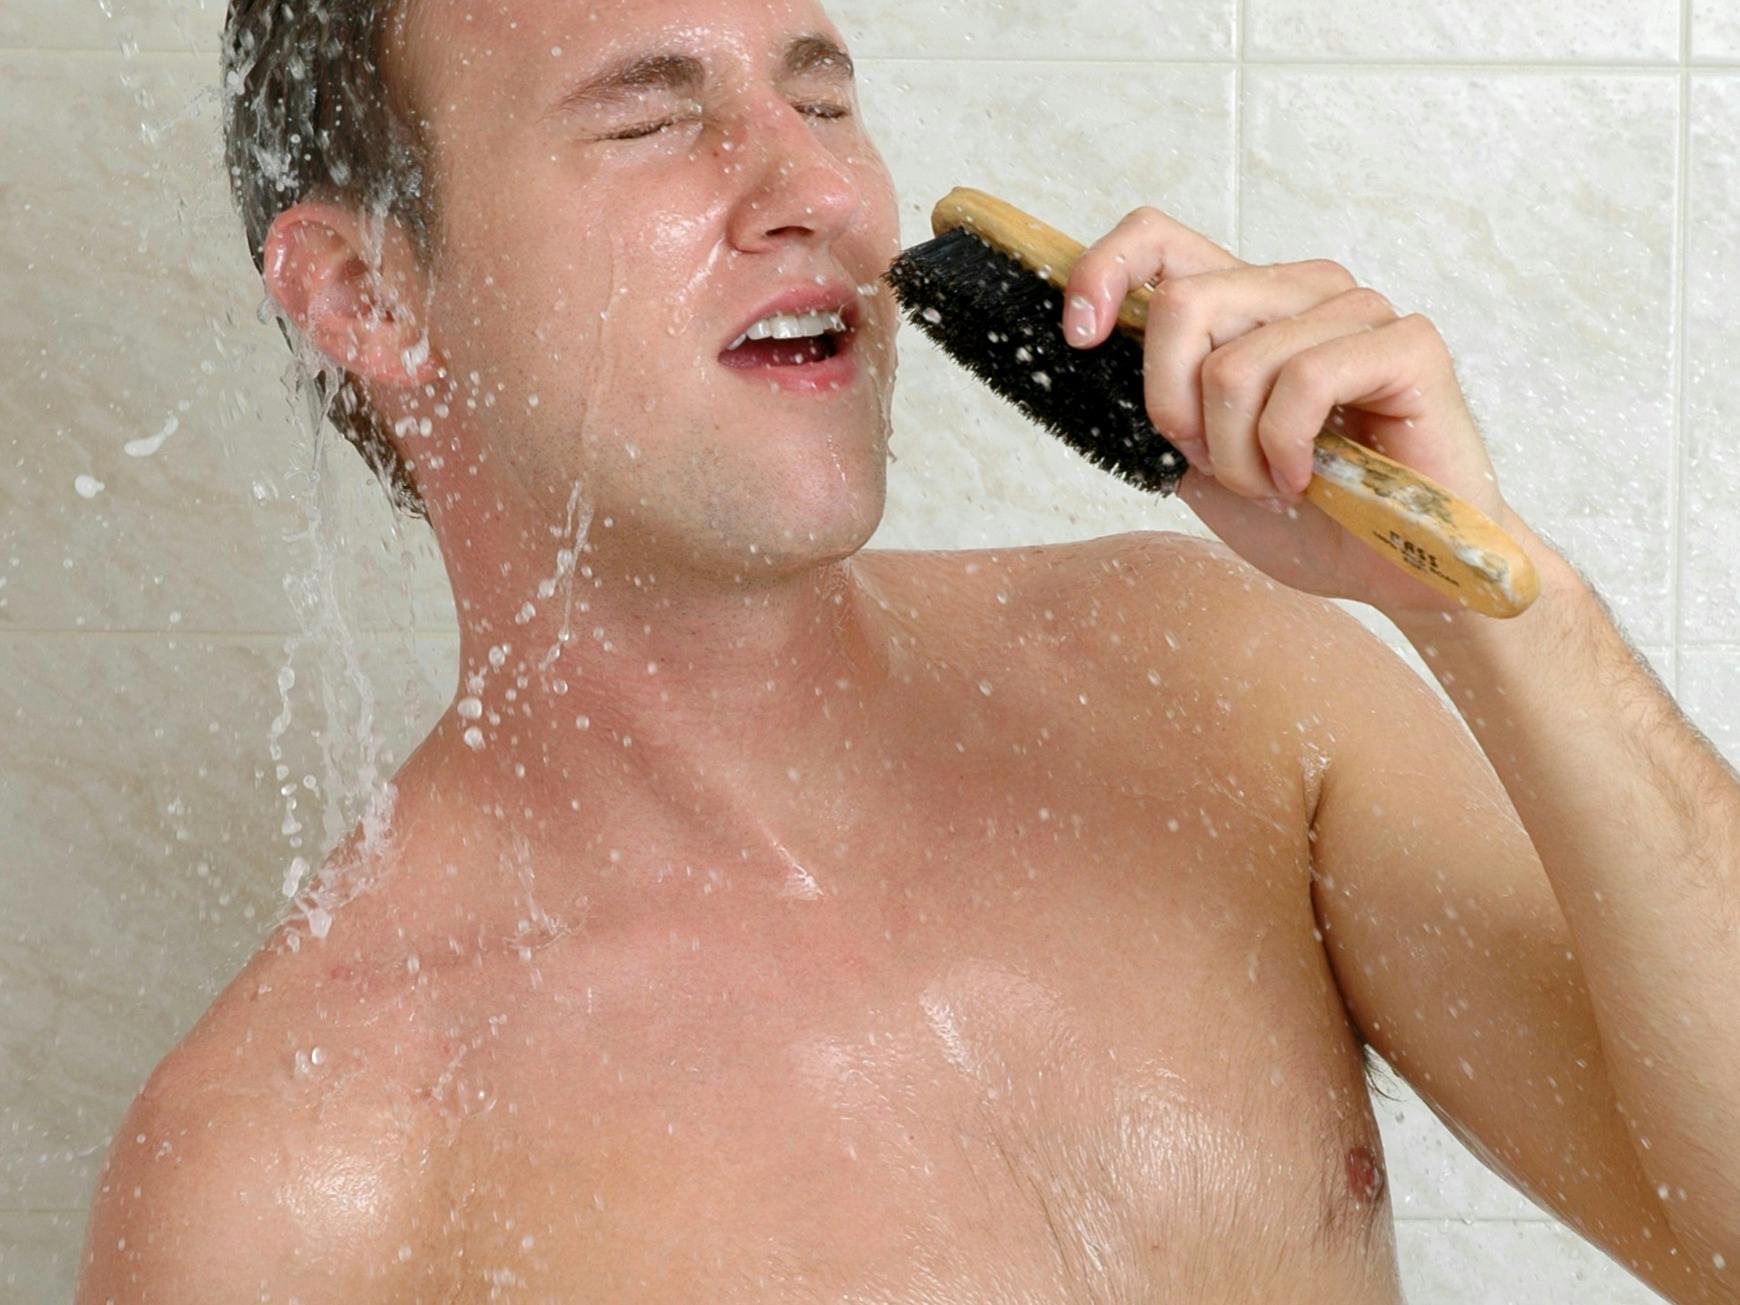 En ung mand synger i brusebadet